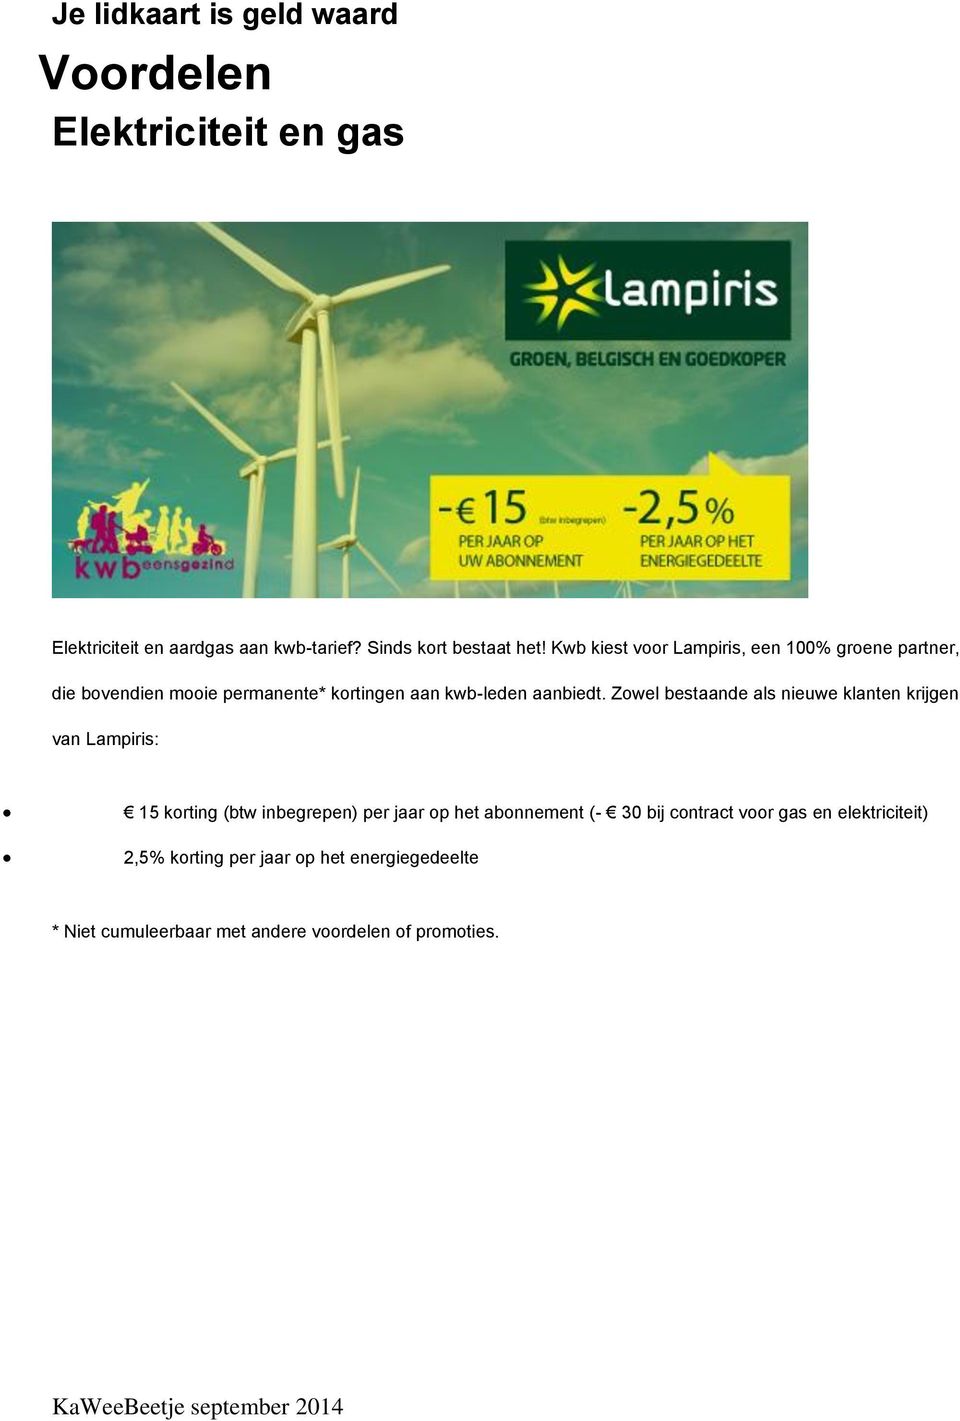 Zowel bestaande als nieuwe klanten krijgen van Lampiris: 15 korting (btw inbegrepen) per jaar op het abonnement (- 30 bij